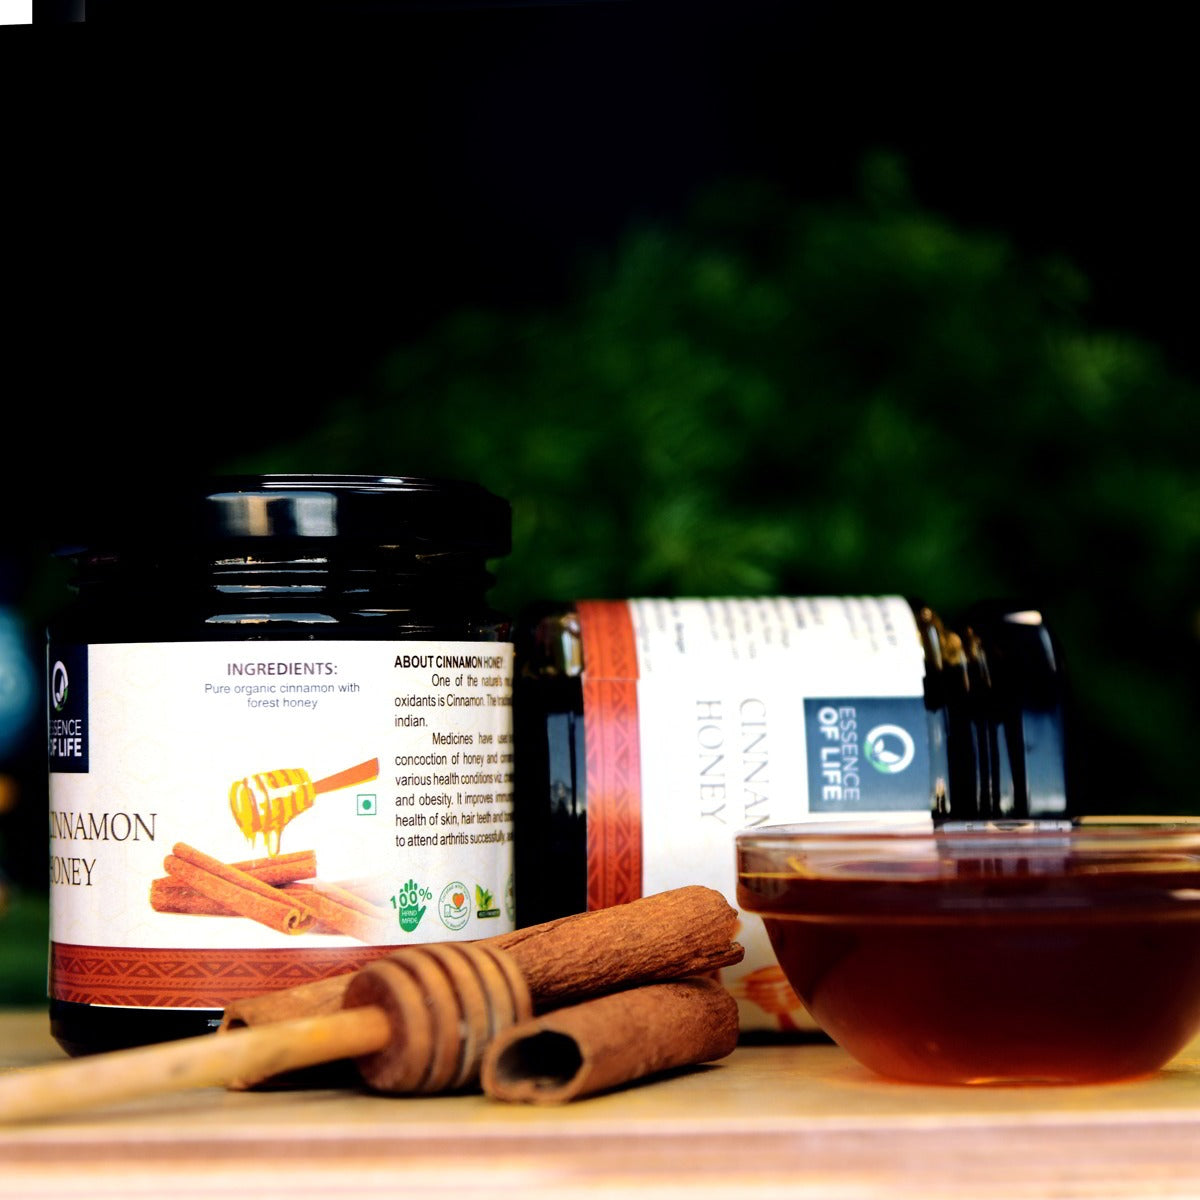 Cinnamon Honey | Essence of Life - Essence of Life - BeKarmic